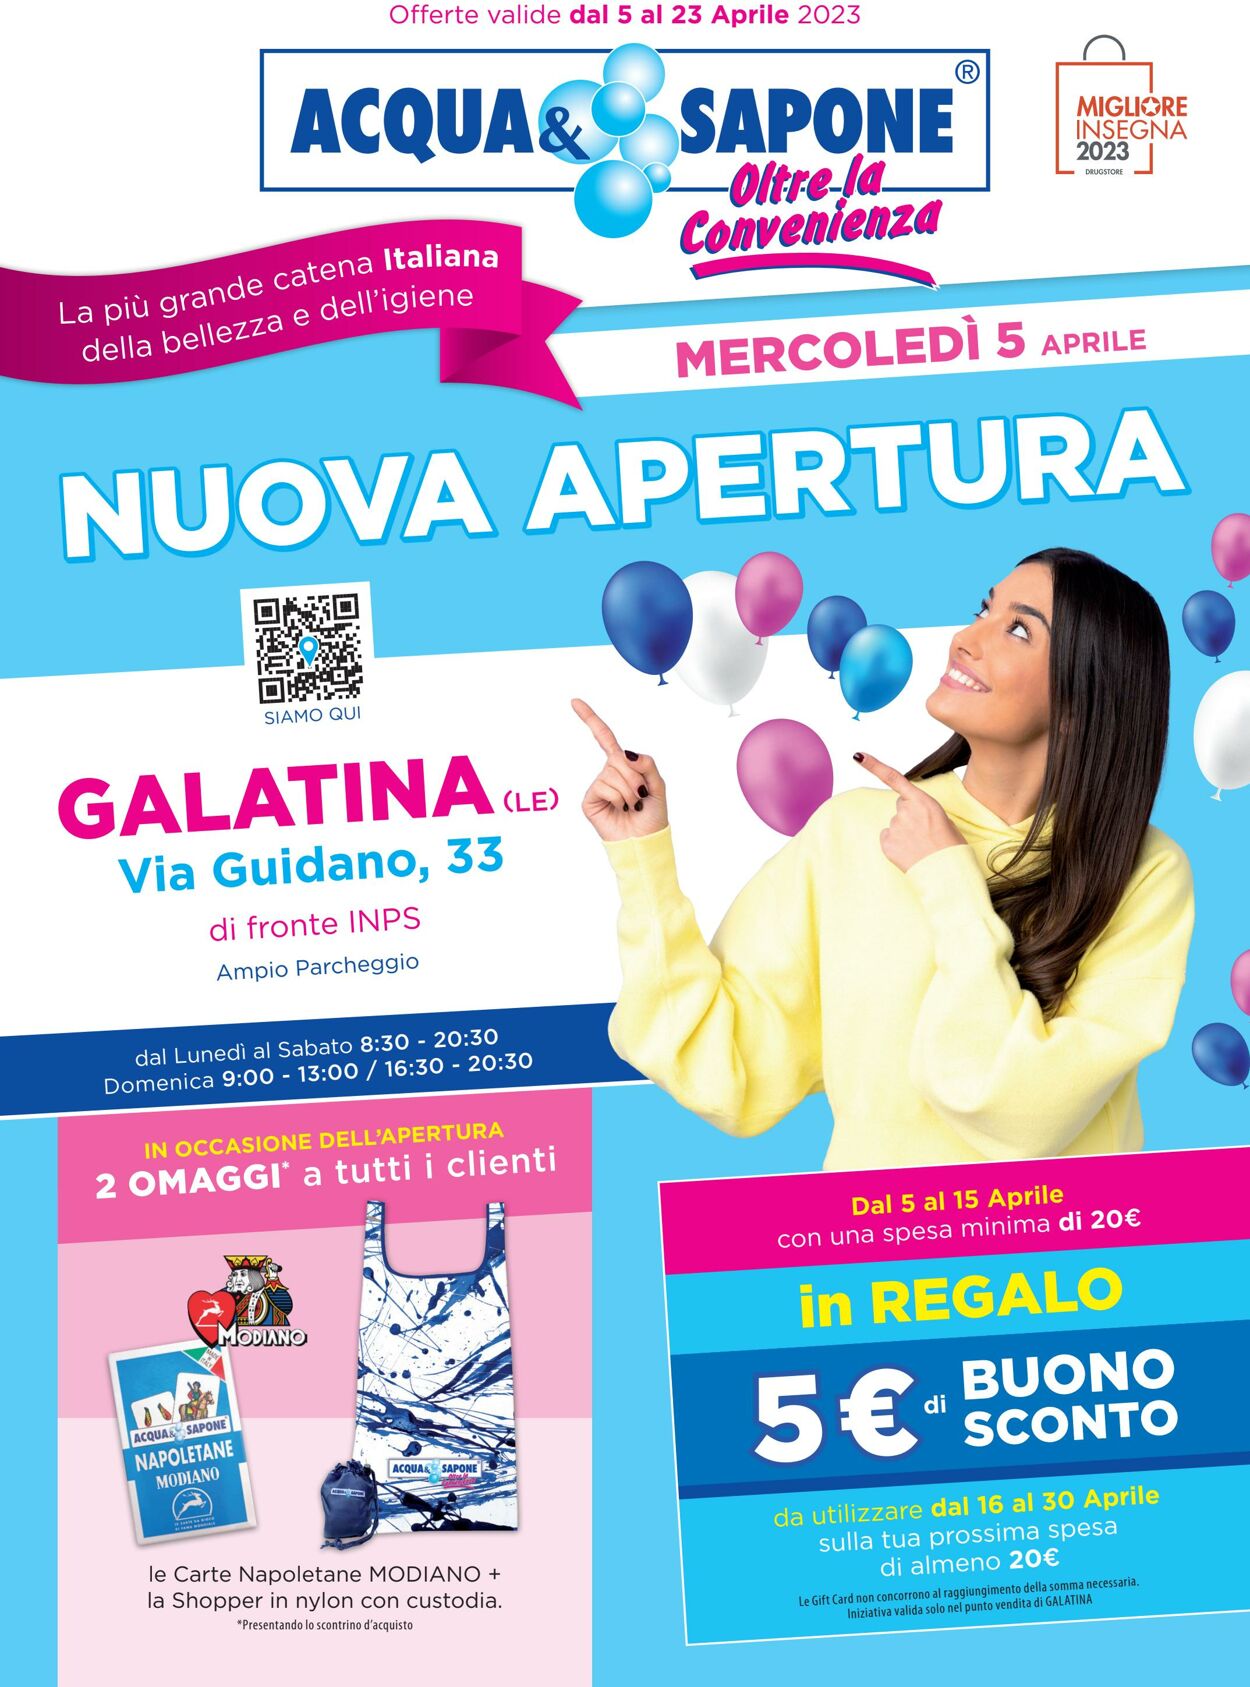 Volantino Acqua e sapone 05.04.2023 - 23.04.2023